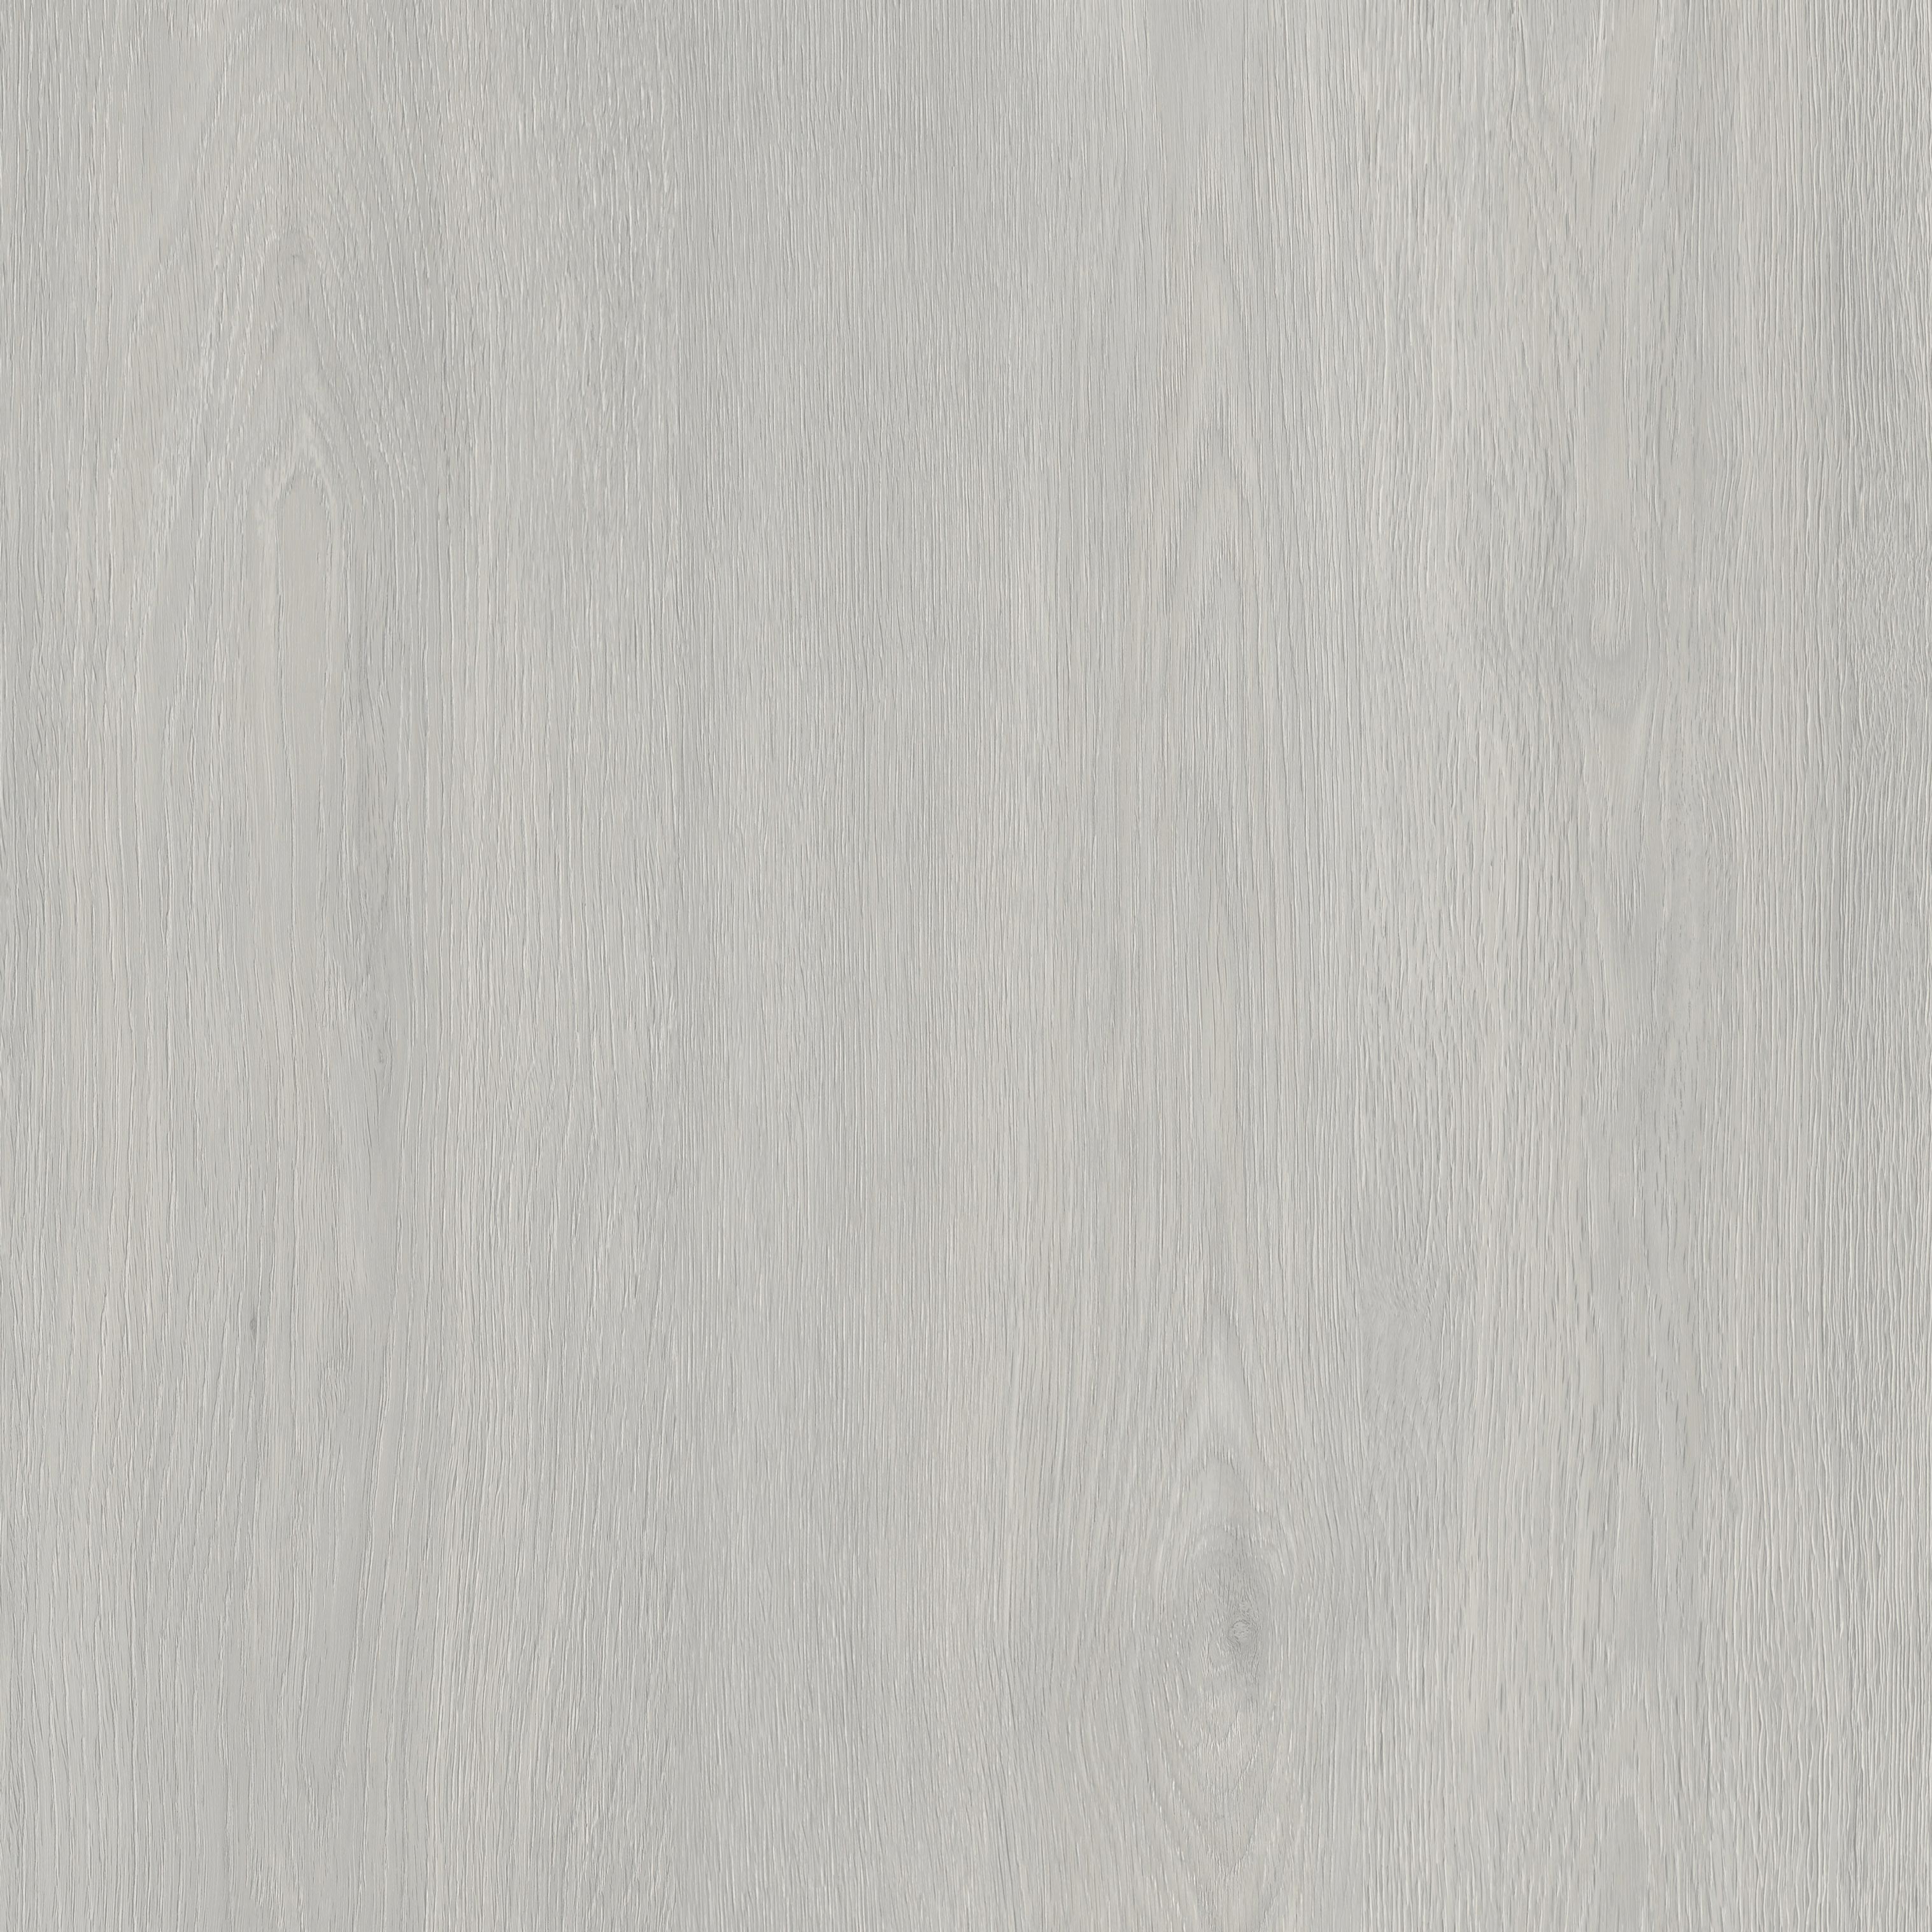 ПВХ плитка Clix Floor Classic CXCL  40240 Дуб светло-серый сатиновый  1251*187*4,2 mm